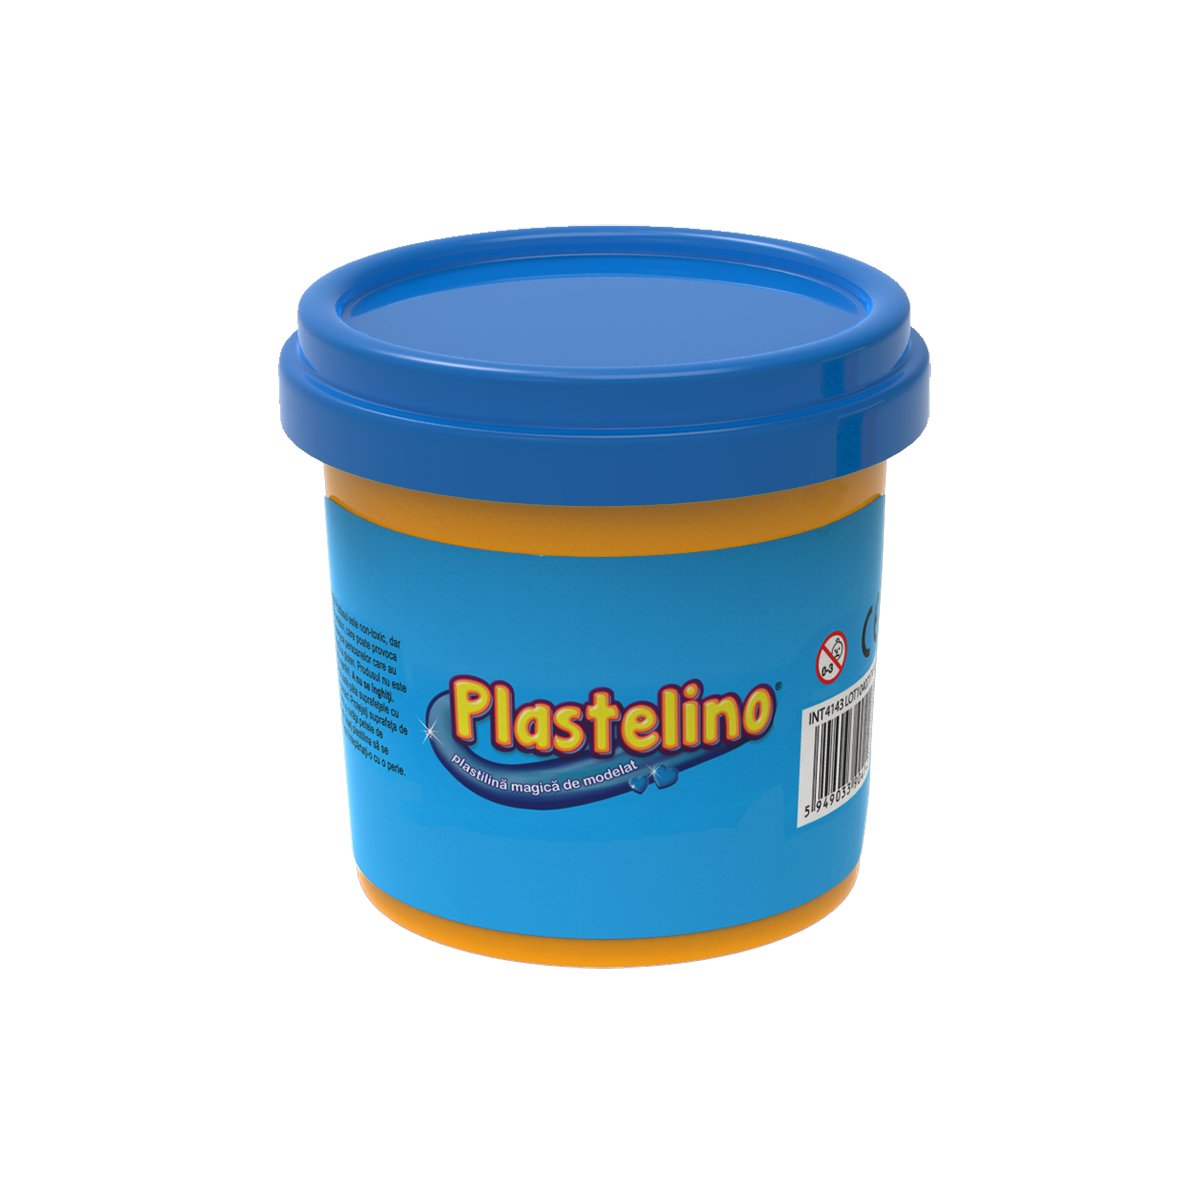 Plastelino - Tub de plastilina, Albastru